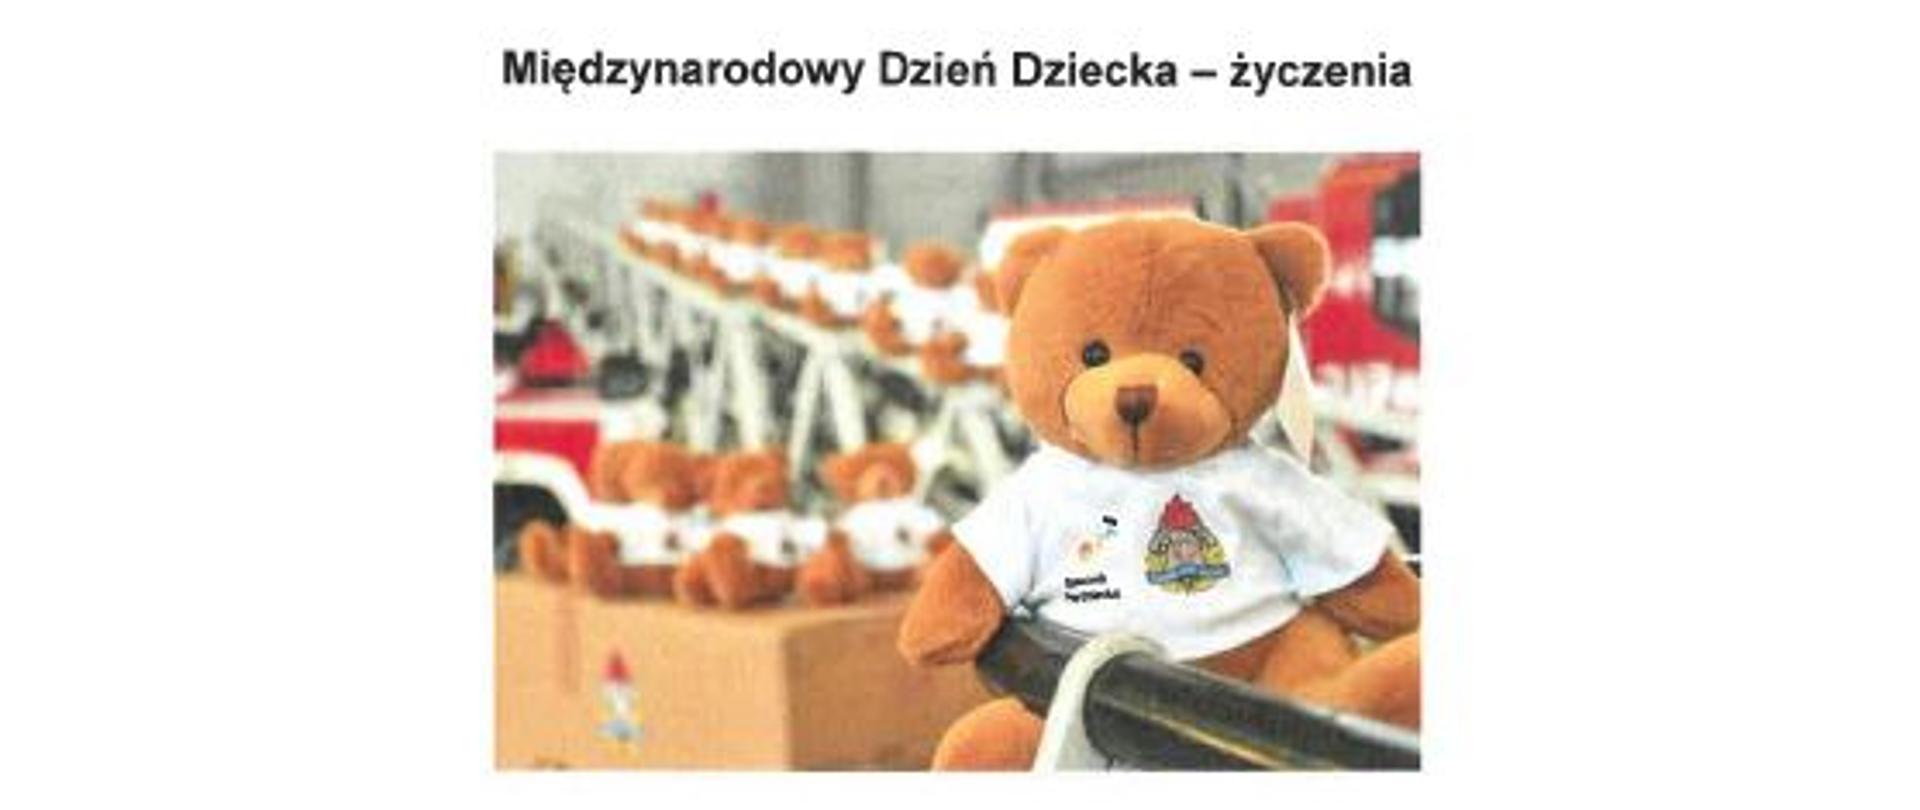 Życzenia Mazowieckiego Komendanta Wojewódzkiego PSP z okazji Międzynarodowego Dnia Dziecka